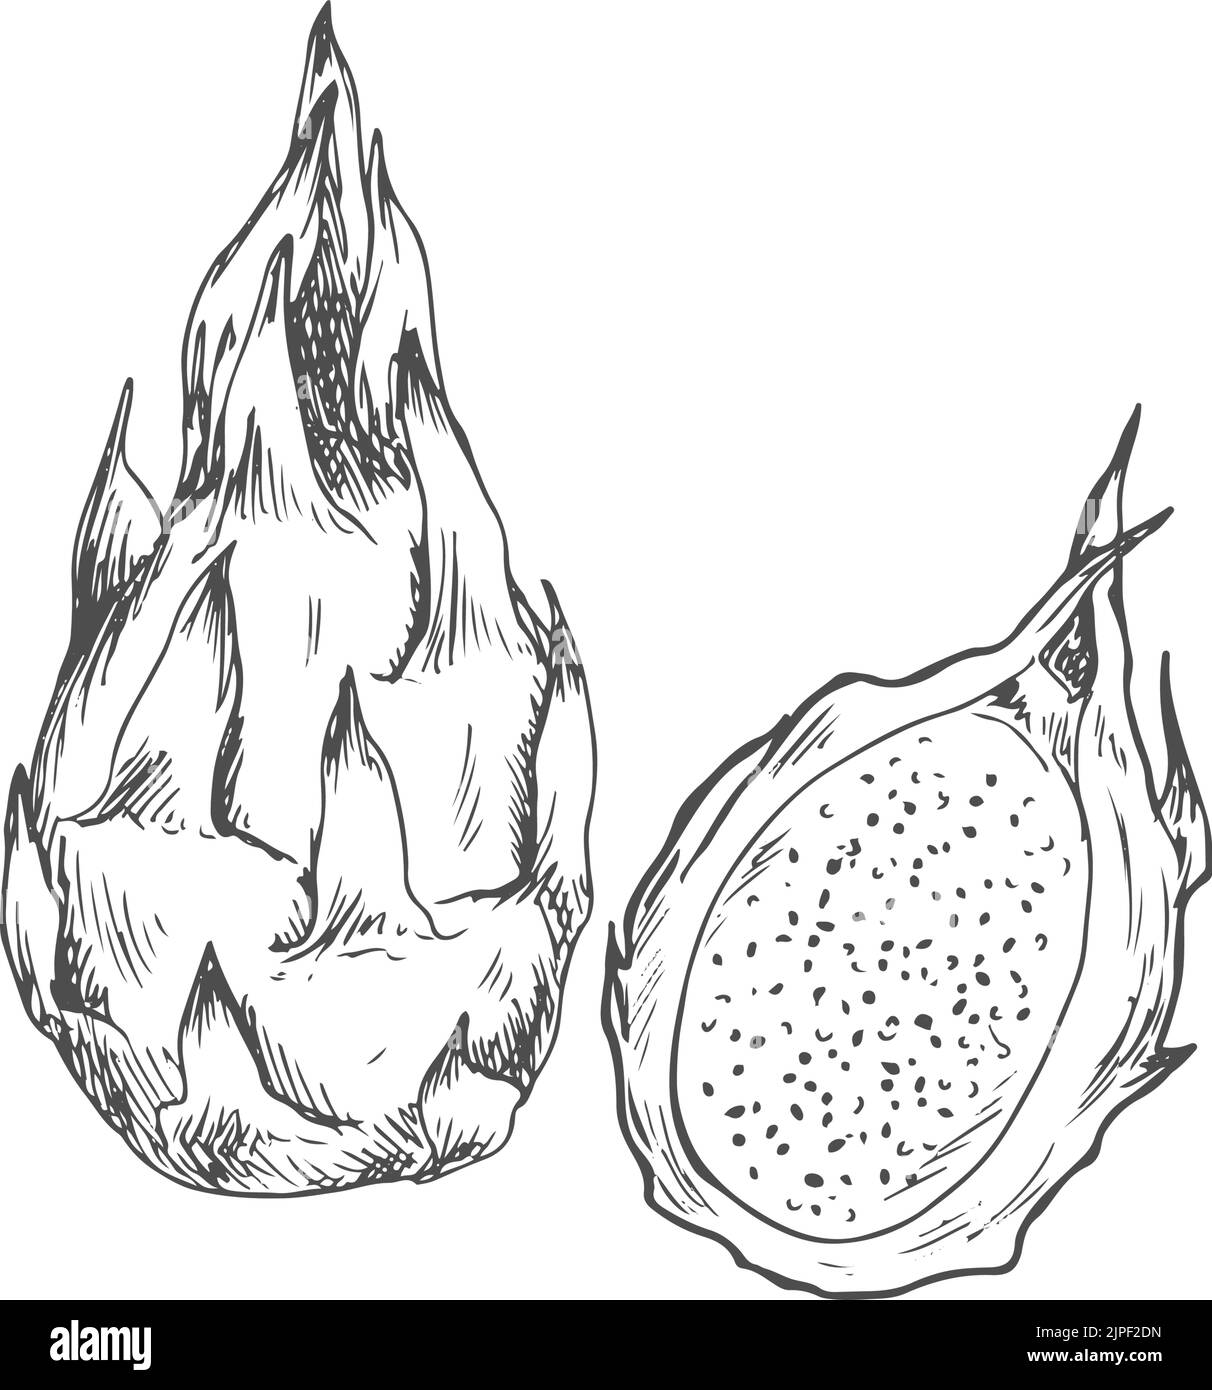 Isolierte Skizze der Drachenfrucht-Pitaya. Vektor ganze und halb exotische tropische Drachenfrucht pitahaya Dessert Stock Vektor